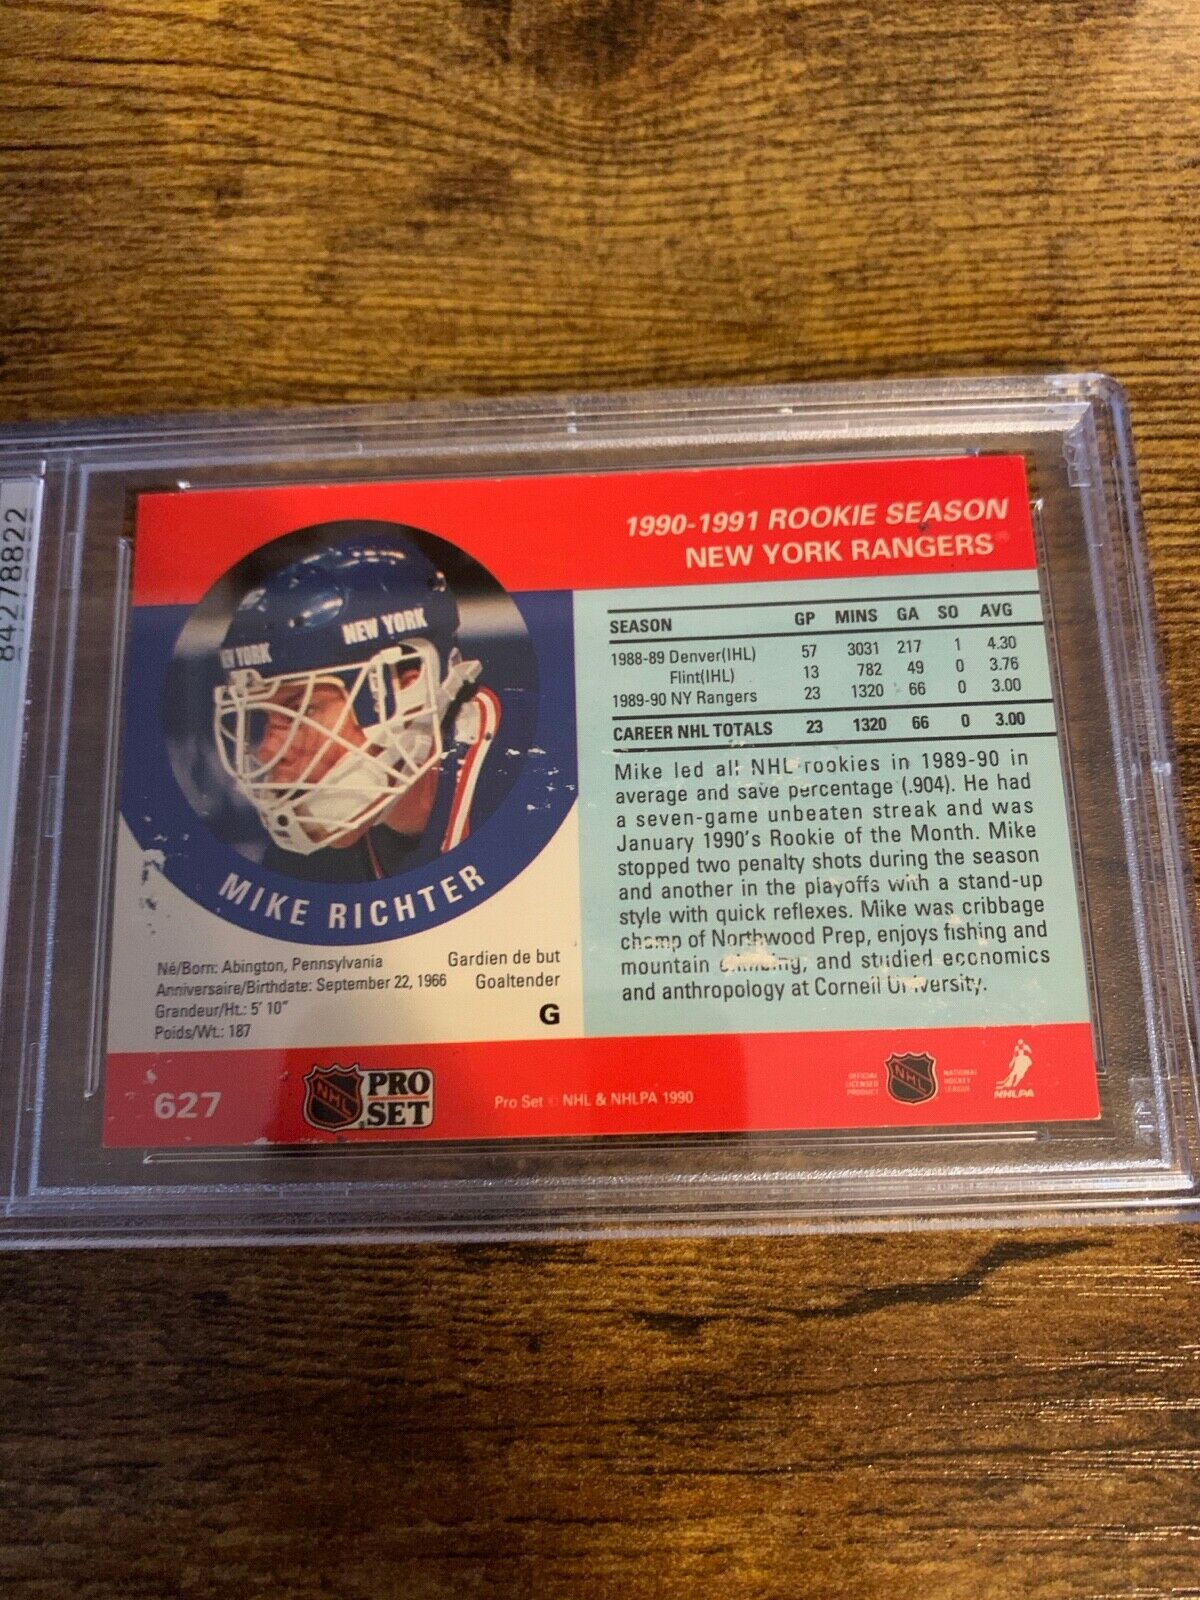 Mike Richter Autographed Signed 1991 NHL Pro Set Card PSA Certified Slabbed